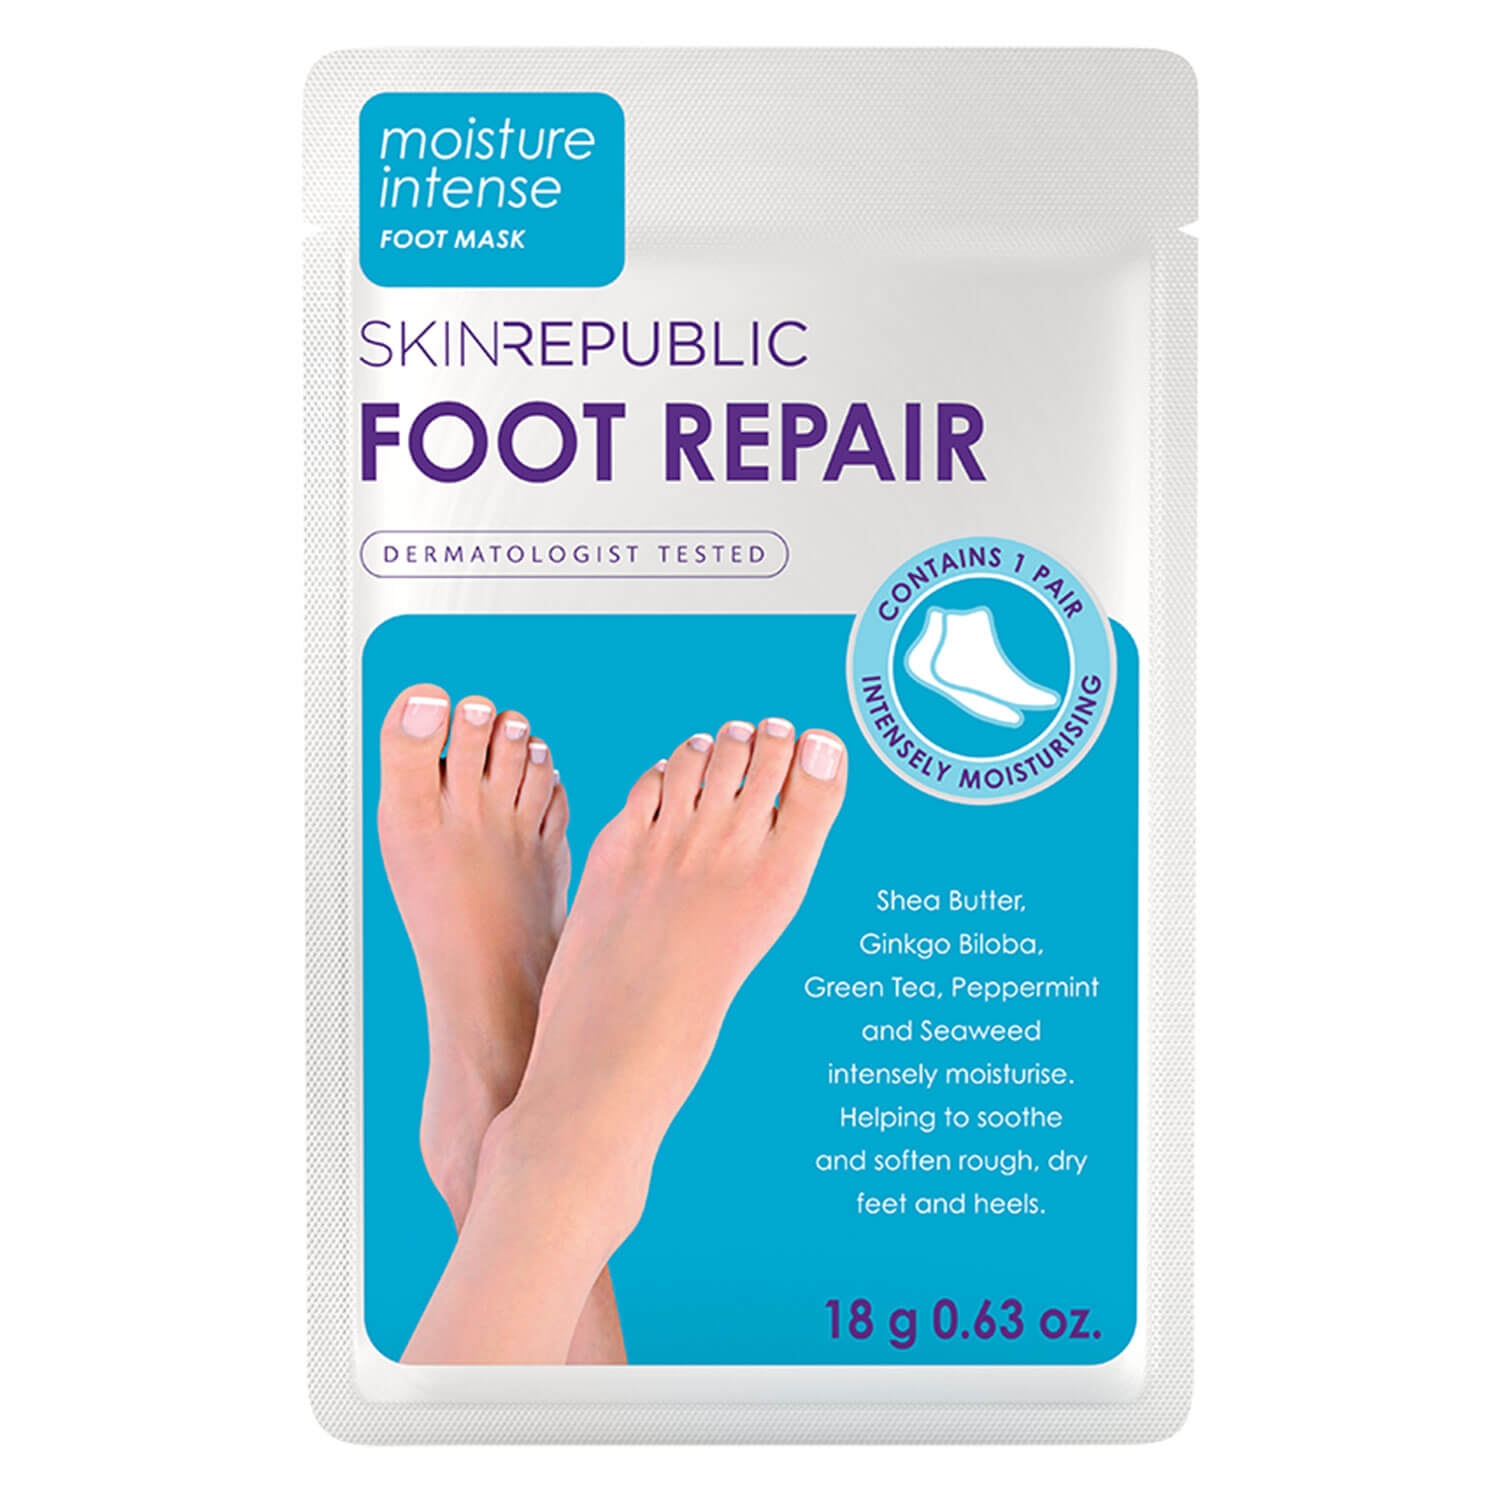 Produktbild von Skin Republic - Foot Repair